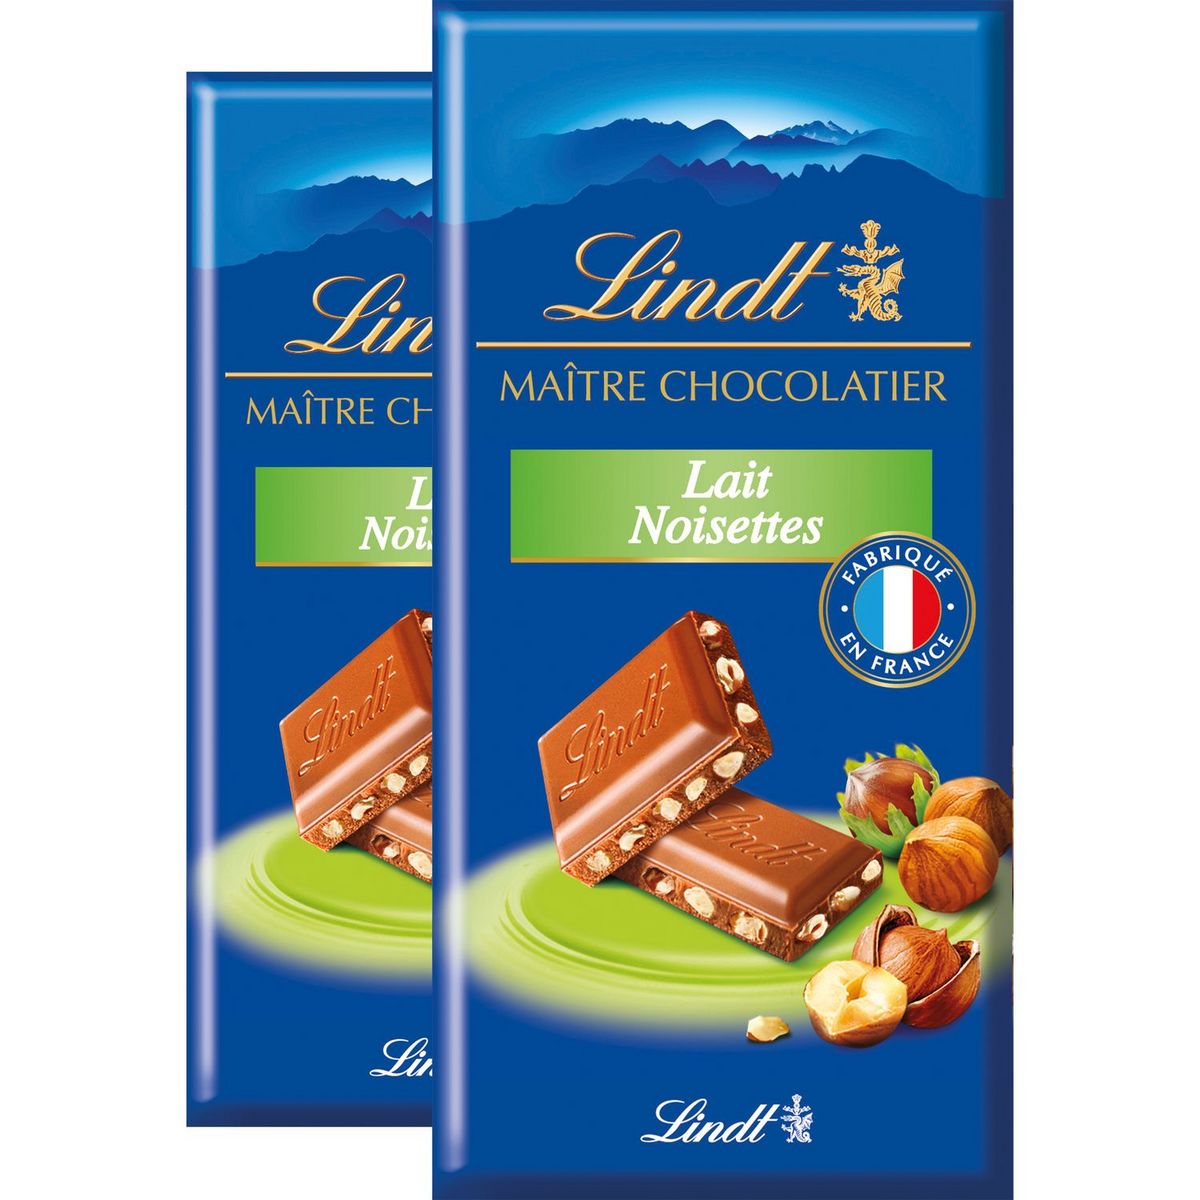 LINDT Maitre Chocolatier tablette de chocolat au lait noisettes 2 pièces 2x110g